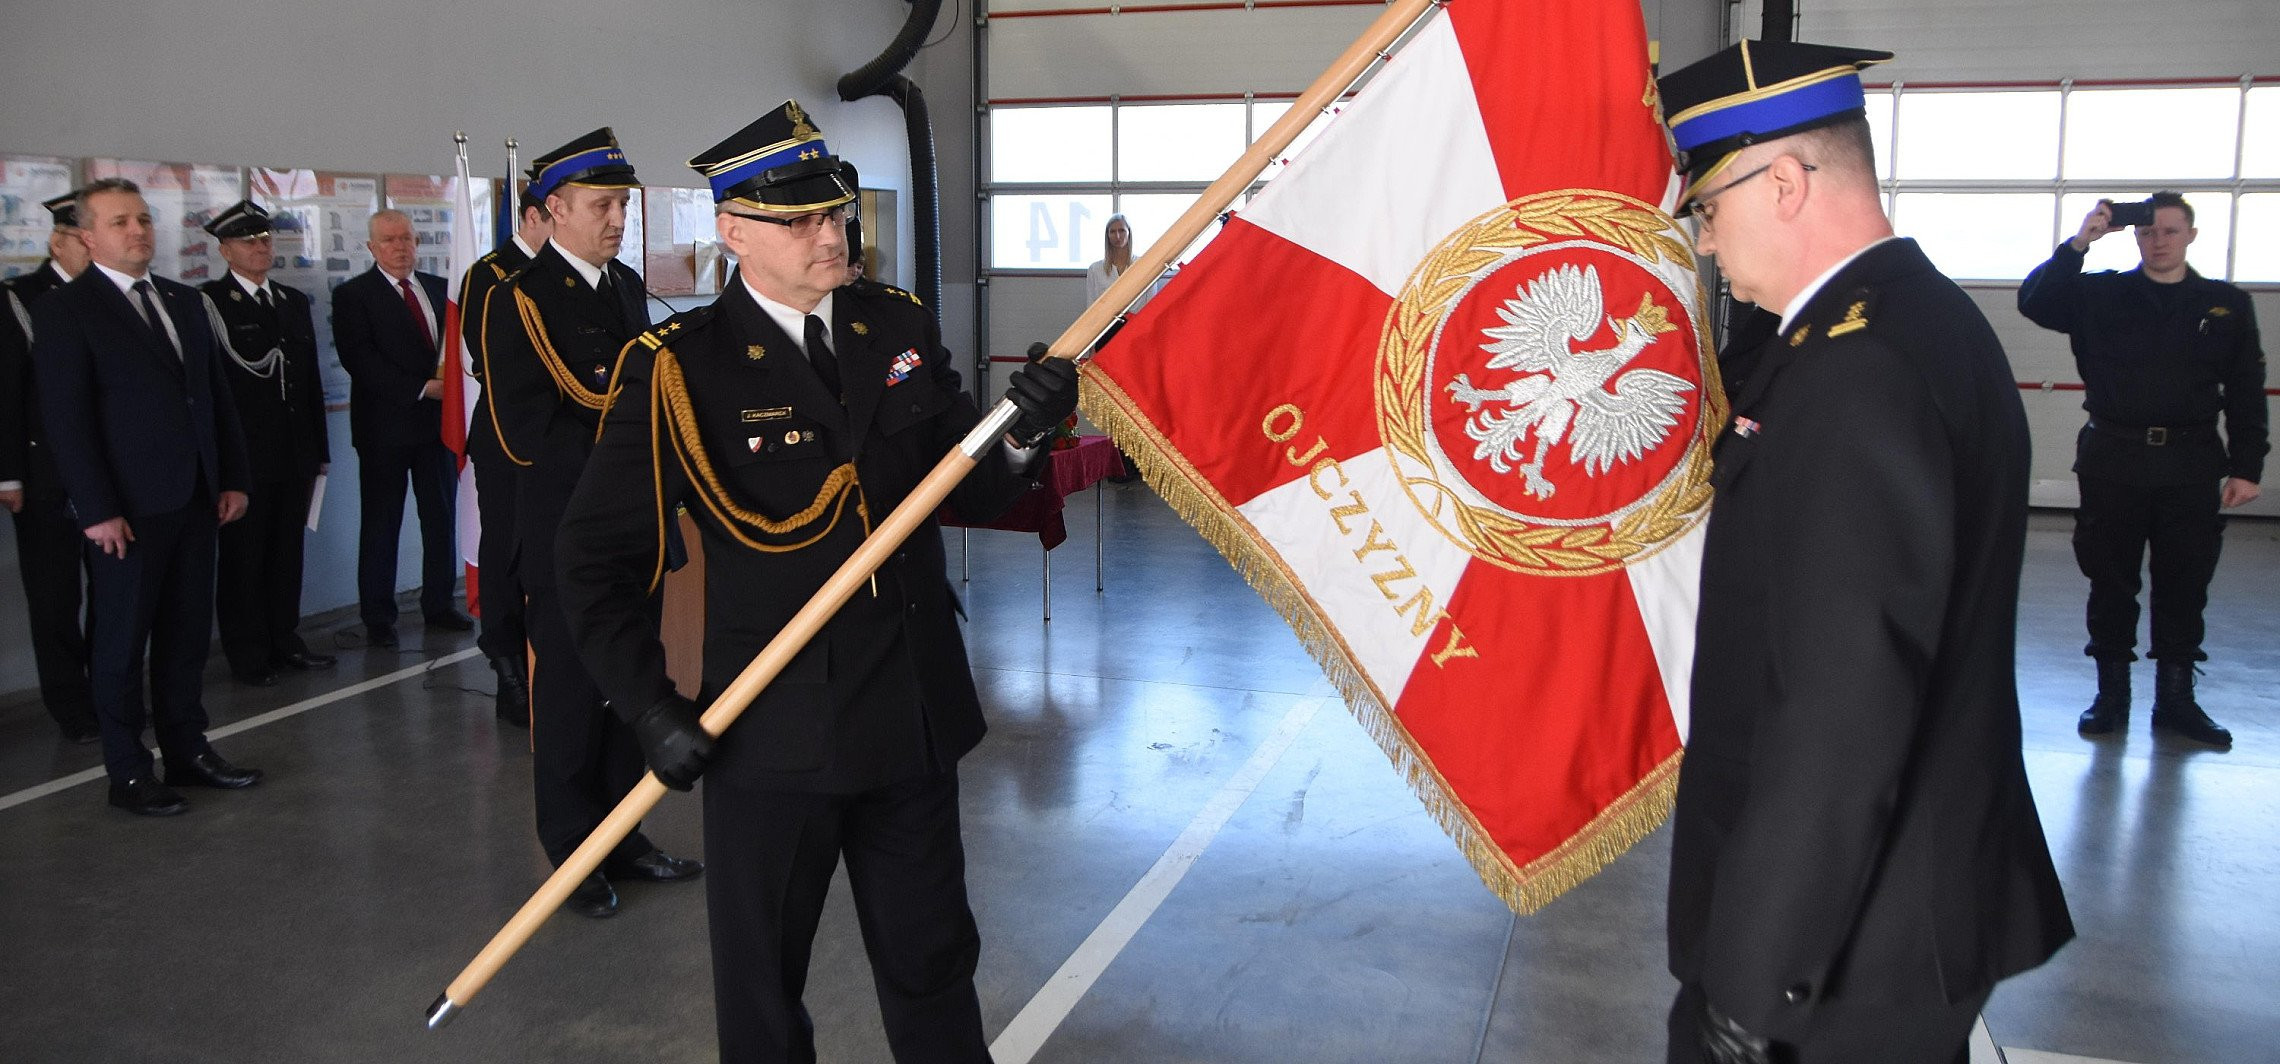 Inowrocław - Zmiana na stanowisku komendanta straży pożarnej